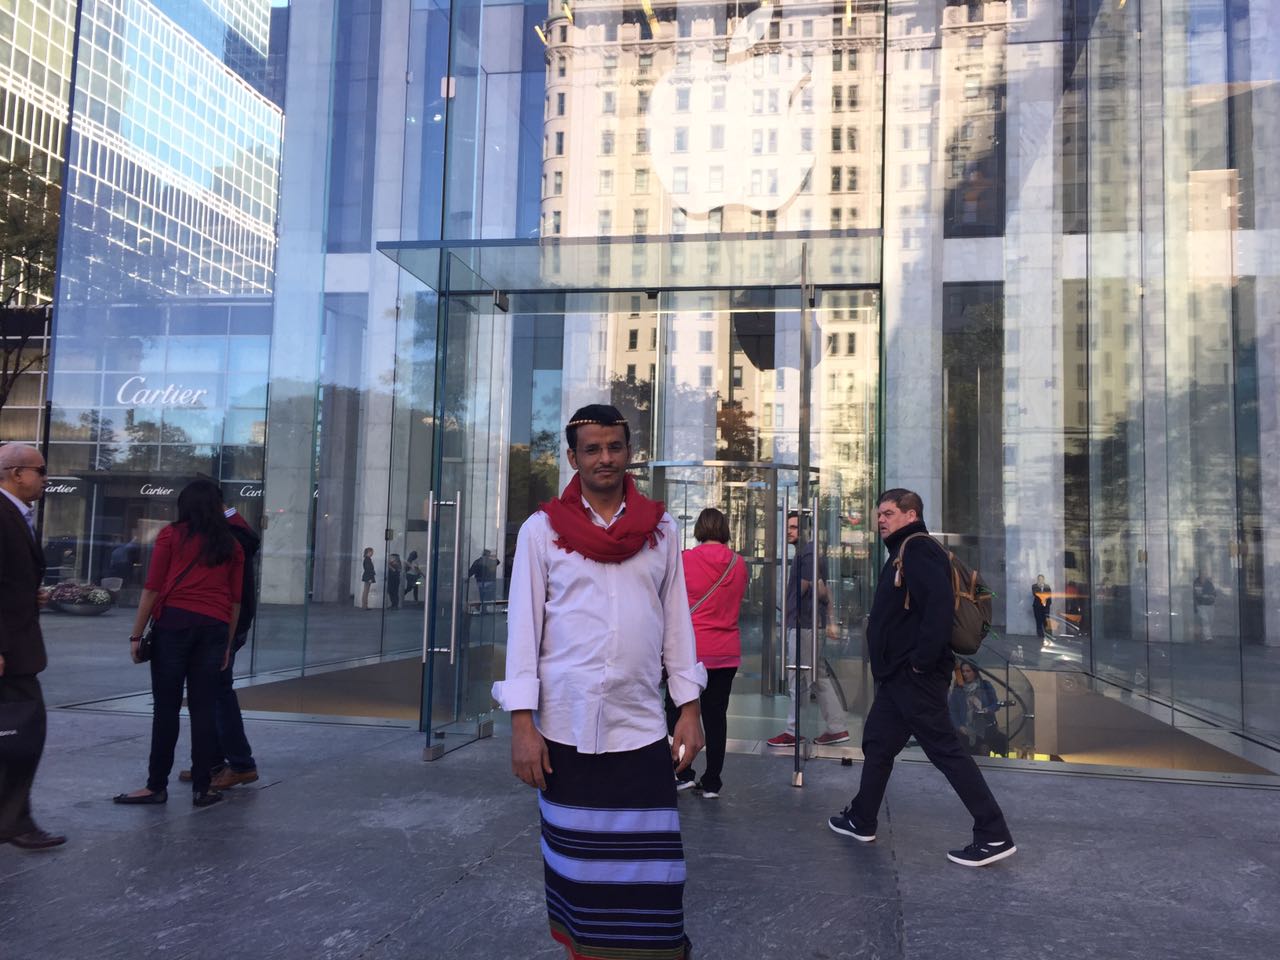 بالصور.. المالكي يحكي لـ”المواطن” قصة لبس ” الشميز والوزرة” في شوارع نيويورك